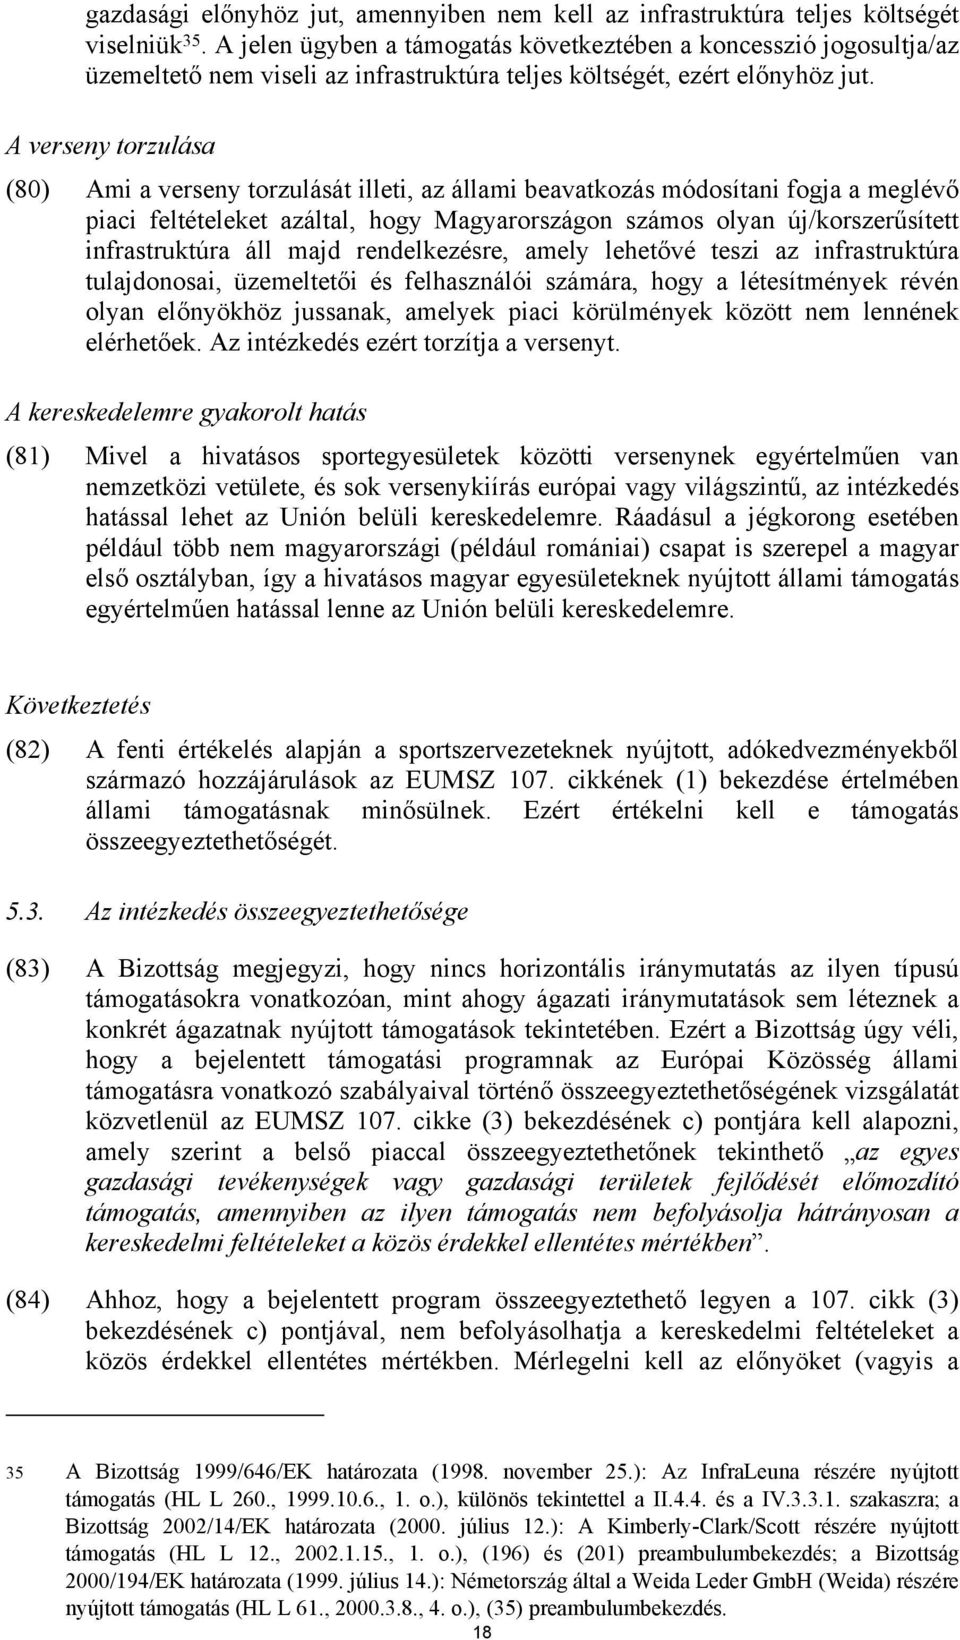 A verseny torzulása (80) Ami a verseny torzulását illeti, az állami beavatkozás módosítani fogja a meglévő piaci feltételeket azáltal, hogy Magyarországon számos olyan új/korszerűsített